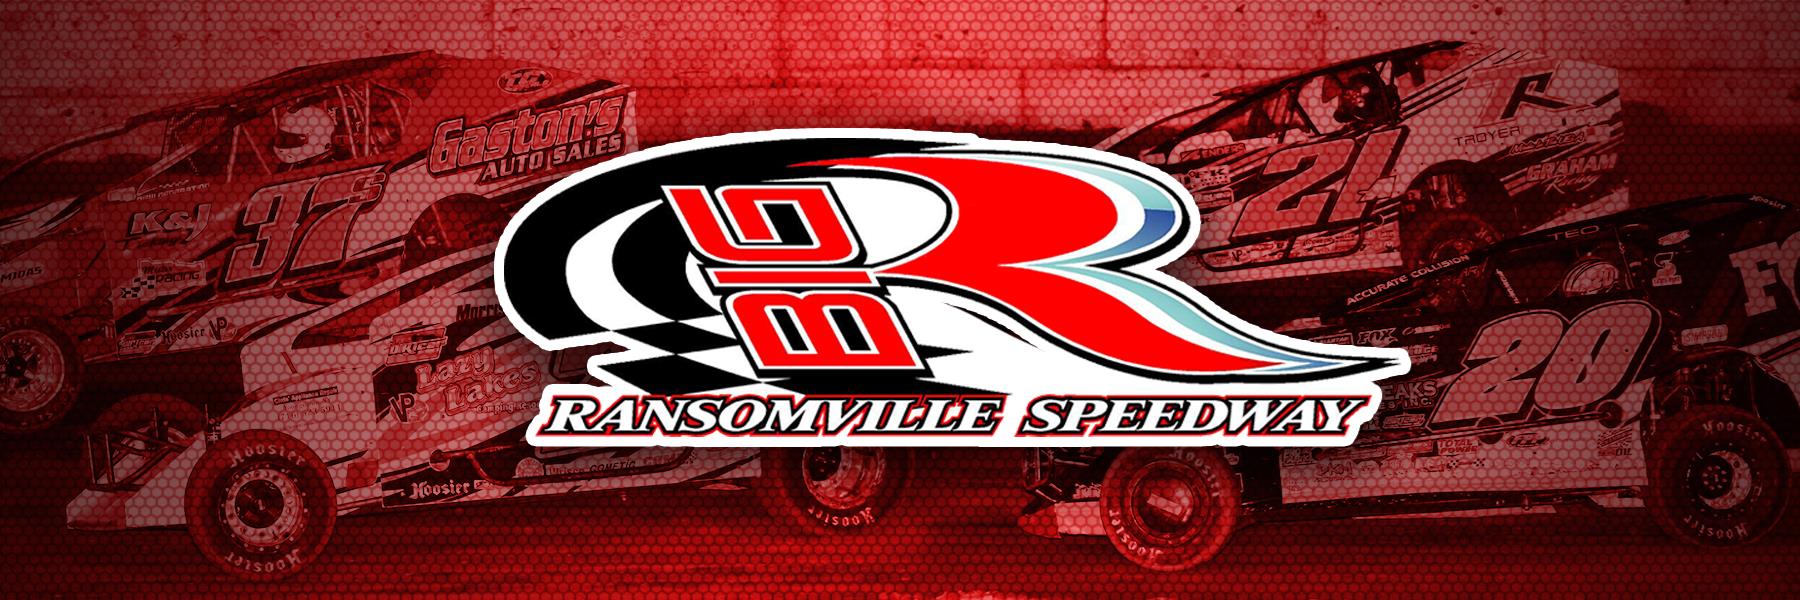 5/28/2021 - Ransomville Speedway